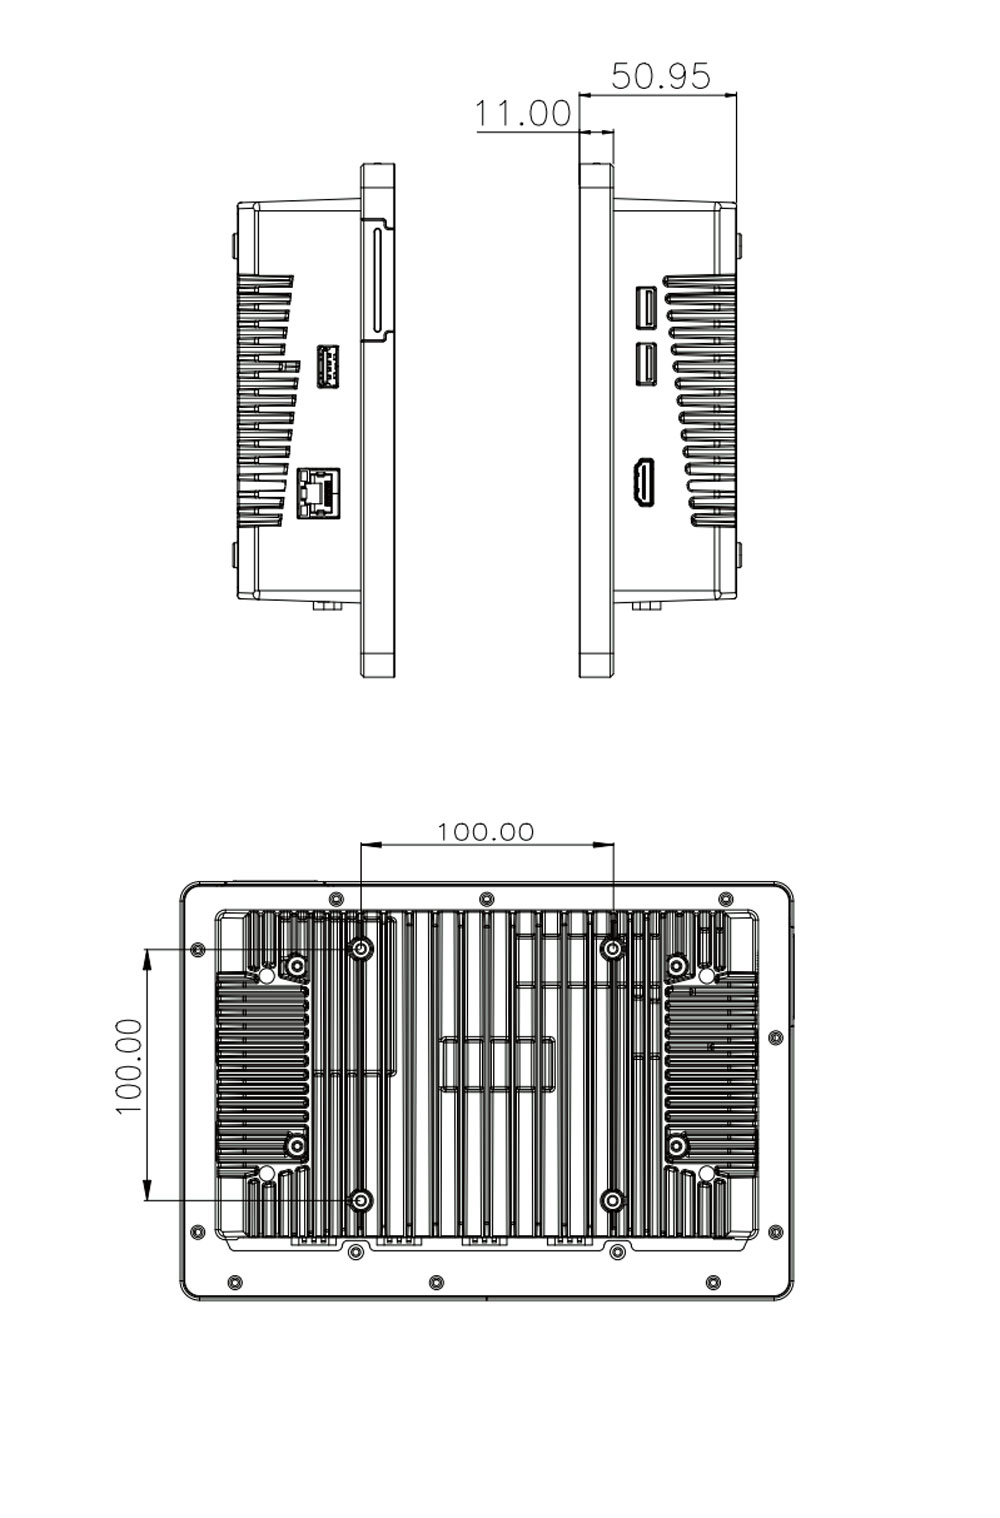 AFL4-W101-ADLP-i7/8G-R10 Panel PC Maße